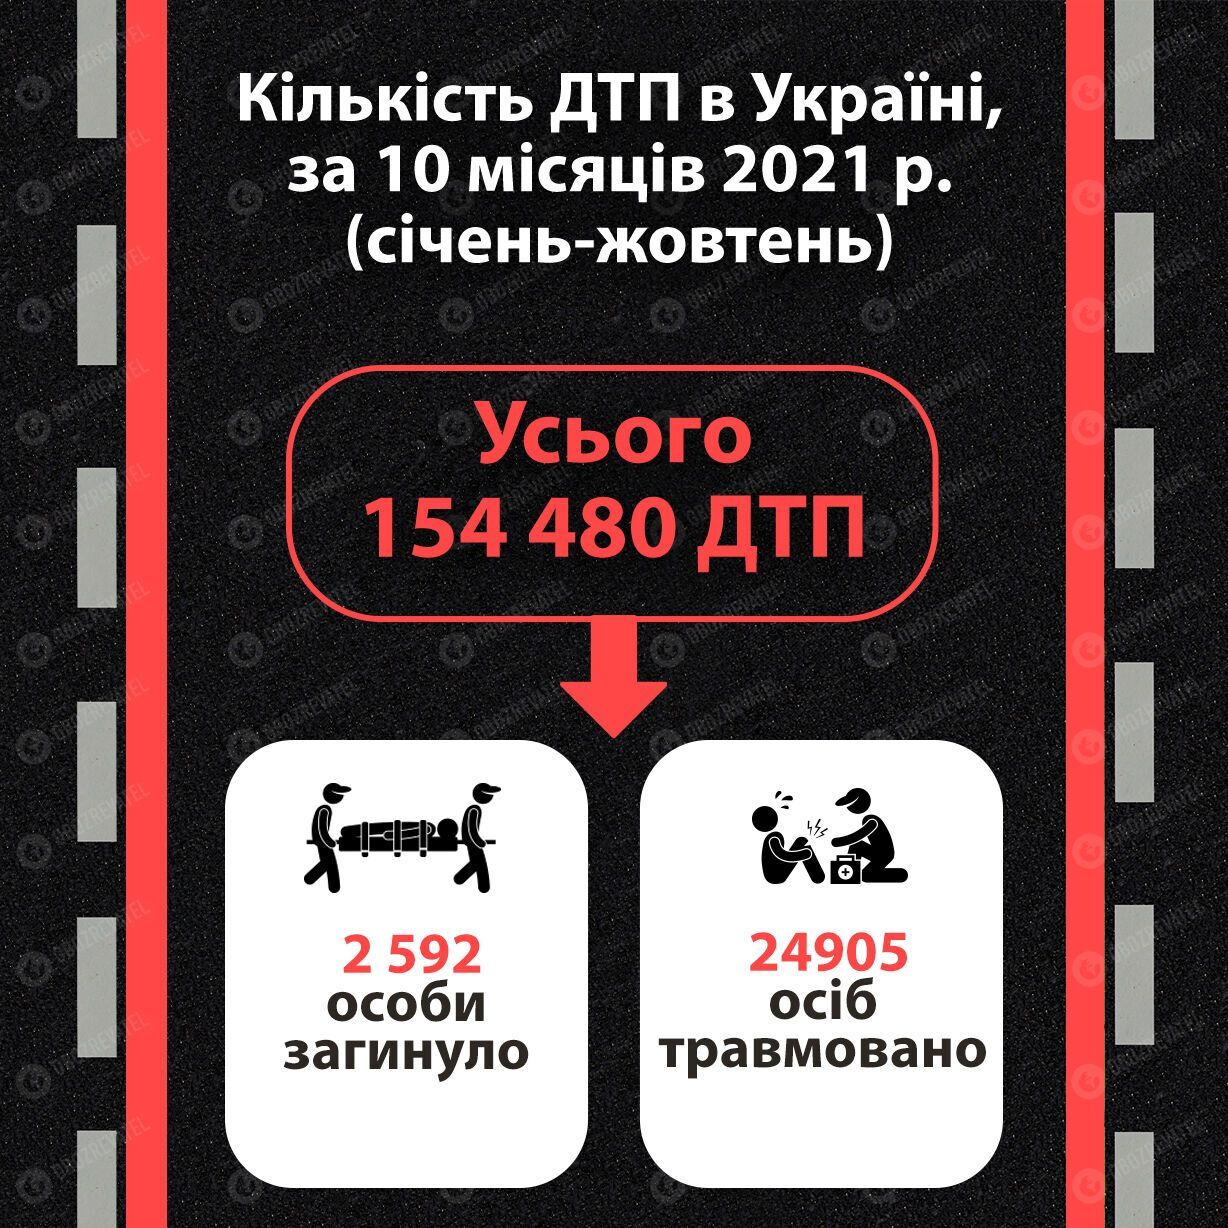 Кількість ДТП в Україні за 10 місяців 2021 року